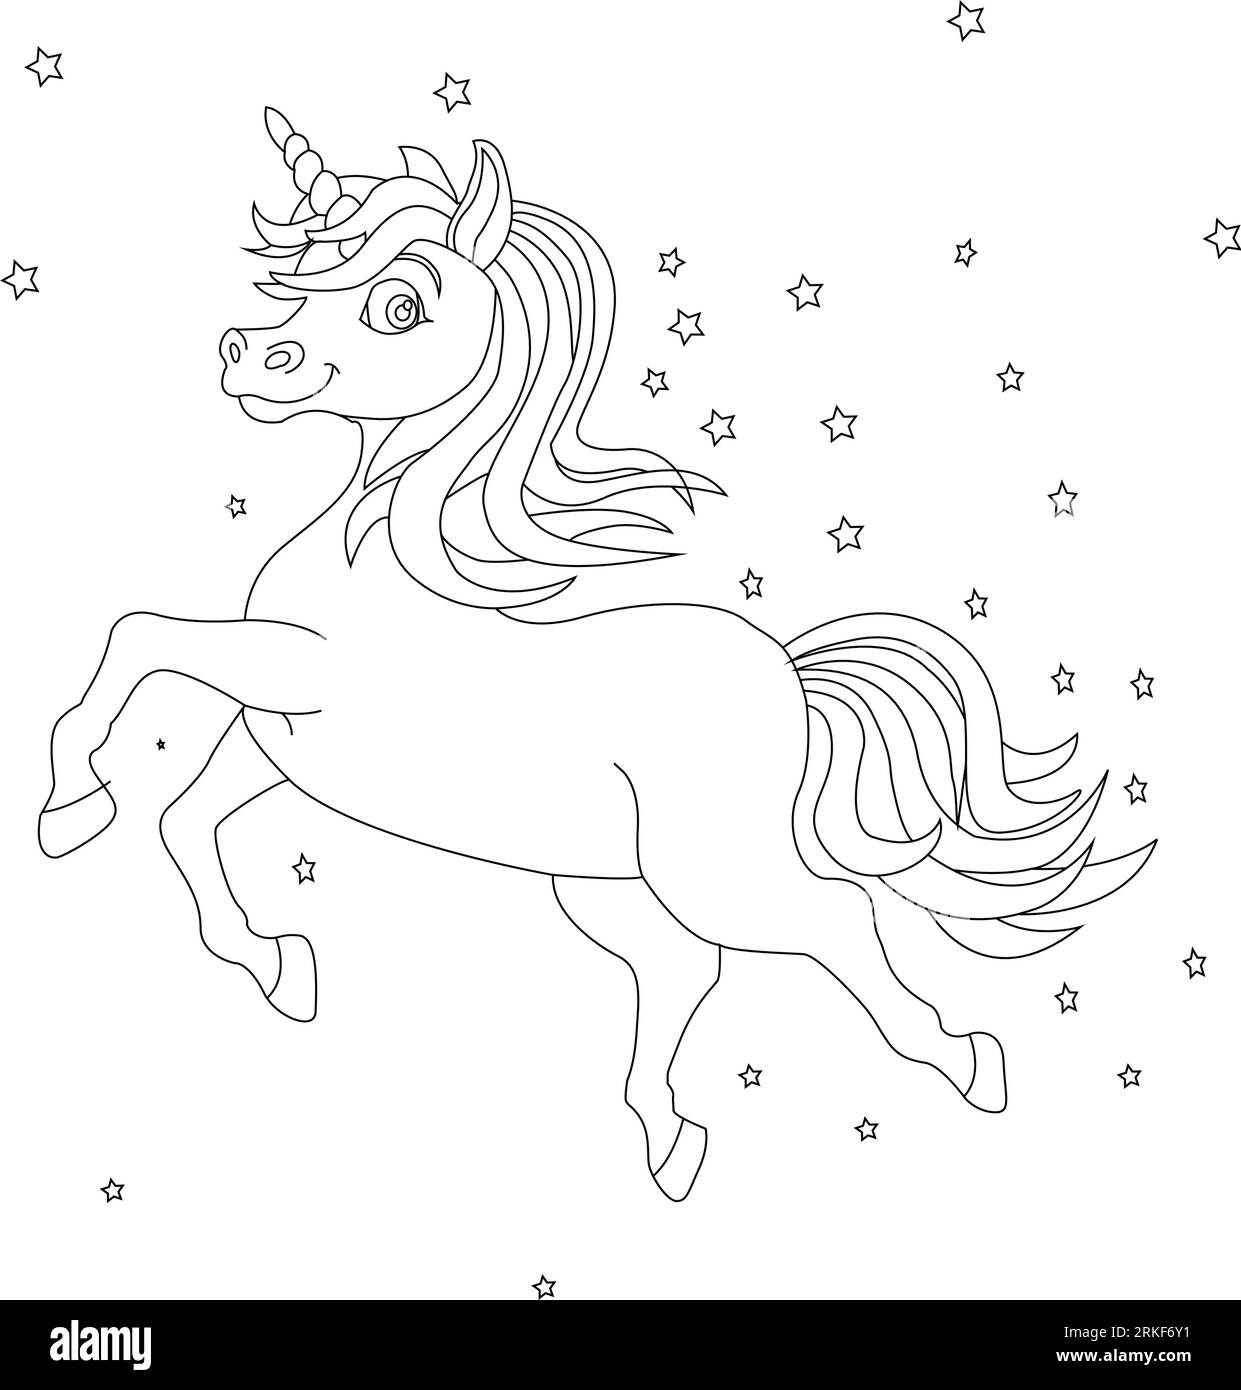 Tuffati nel mondo di Unicorn Coloring Book Magic, fantastico animale. Bianco e nero, lineare, immagine. Per la progettazione di libri da colorare, stampe, poste Illustrazione Vettoriale